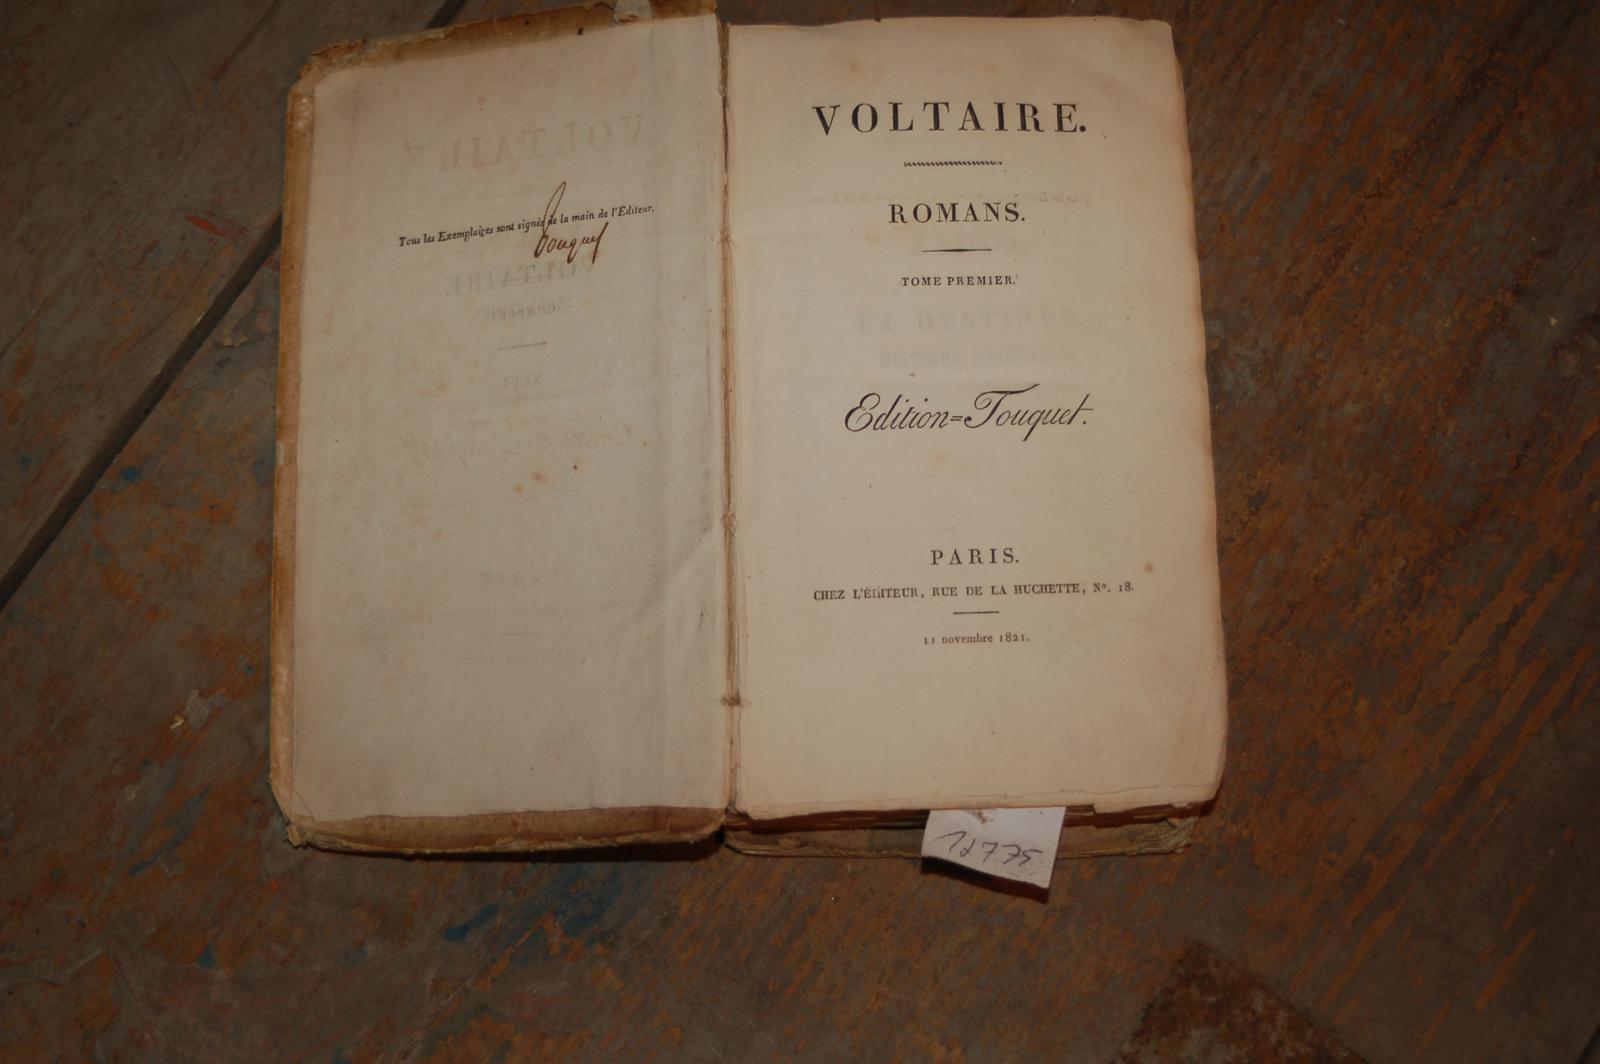 Voltaire  Romans  tome premier  Edition Touquet (mit handschriftlicher Signatur vom Herausgeber) 